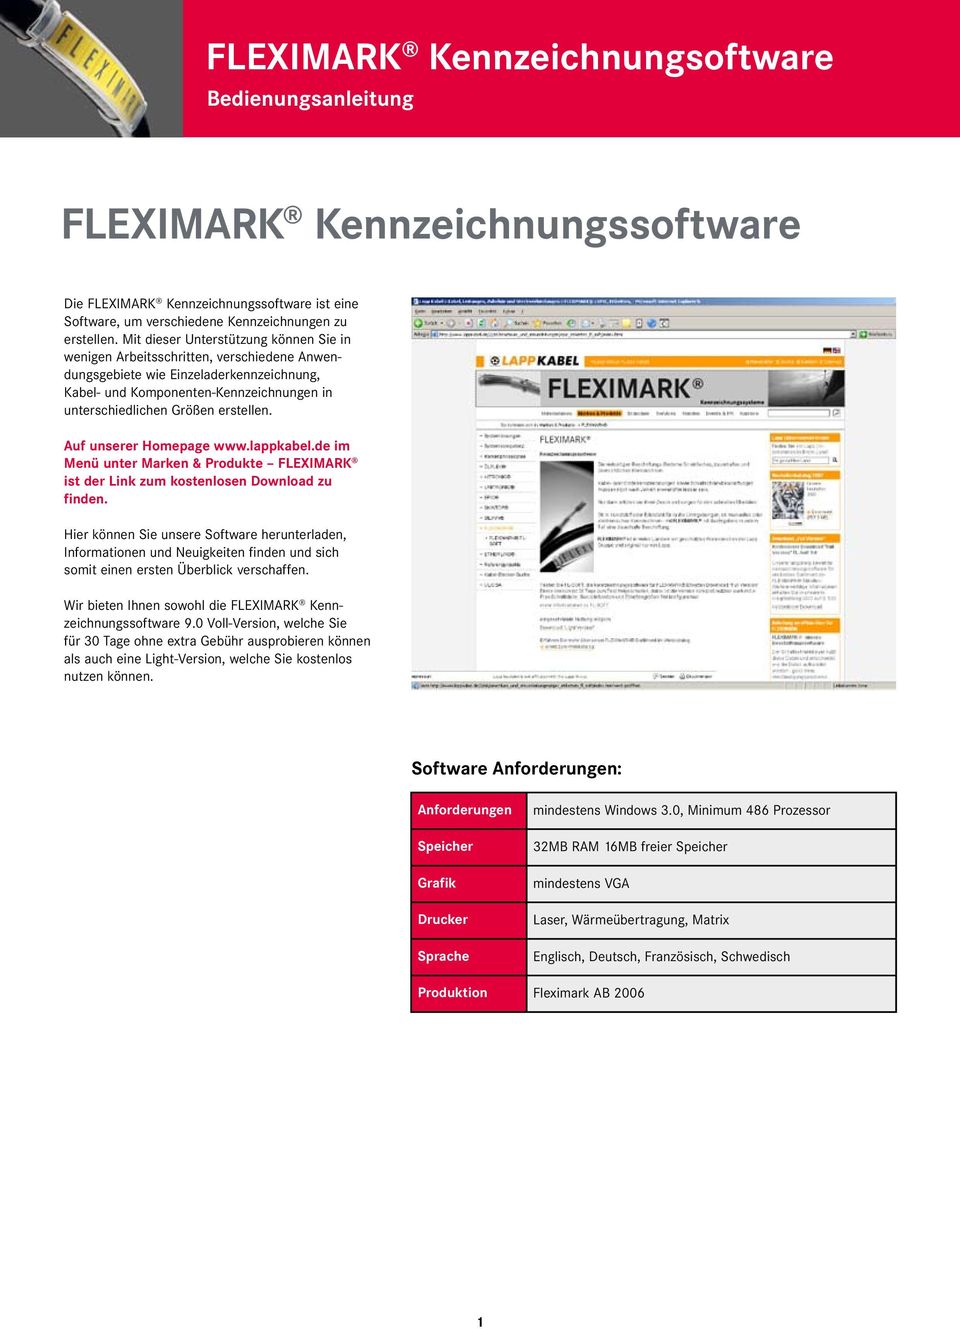 erstellen. Auf unserer Homepage www.lappkabel.de im Menü unter Marken & Produkte FLEXIMARK ist der Link zum kostenlosen Download zu finden.